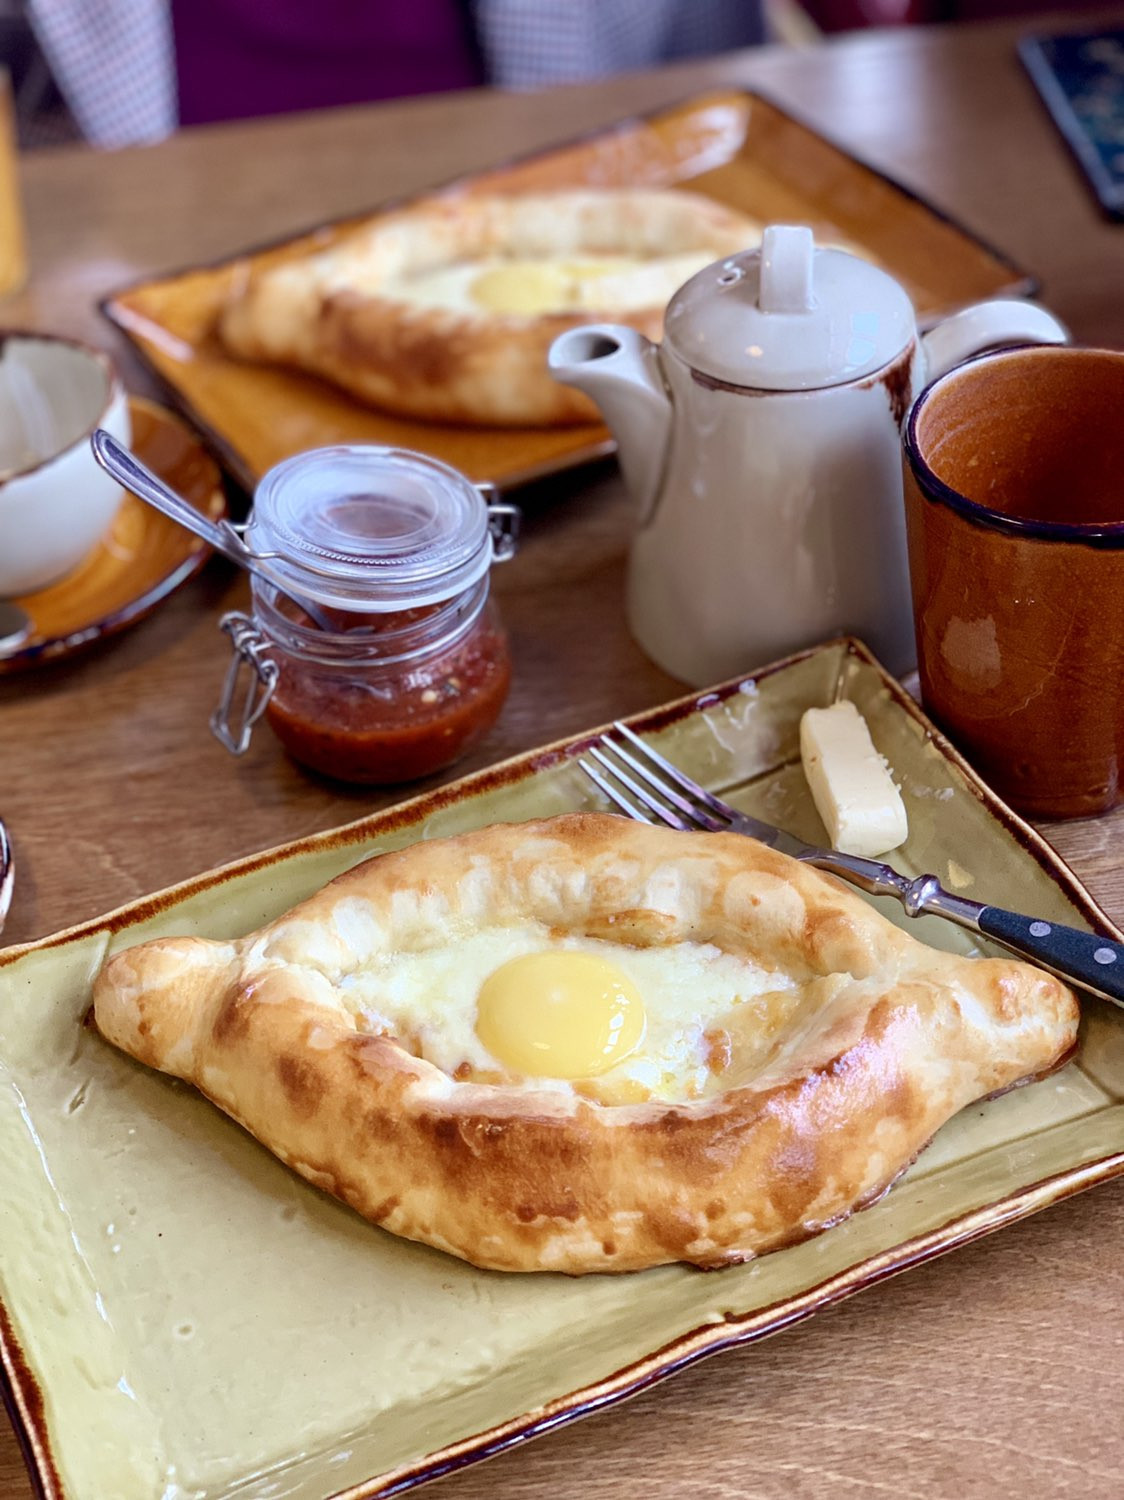 Хачапури новосибирск. Молочный завтрак. Хачапури на завтрак. Хачапури и кофе. Доброе утро хачапури.